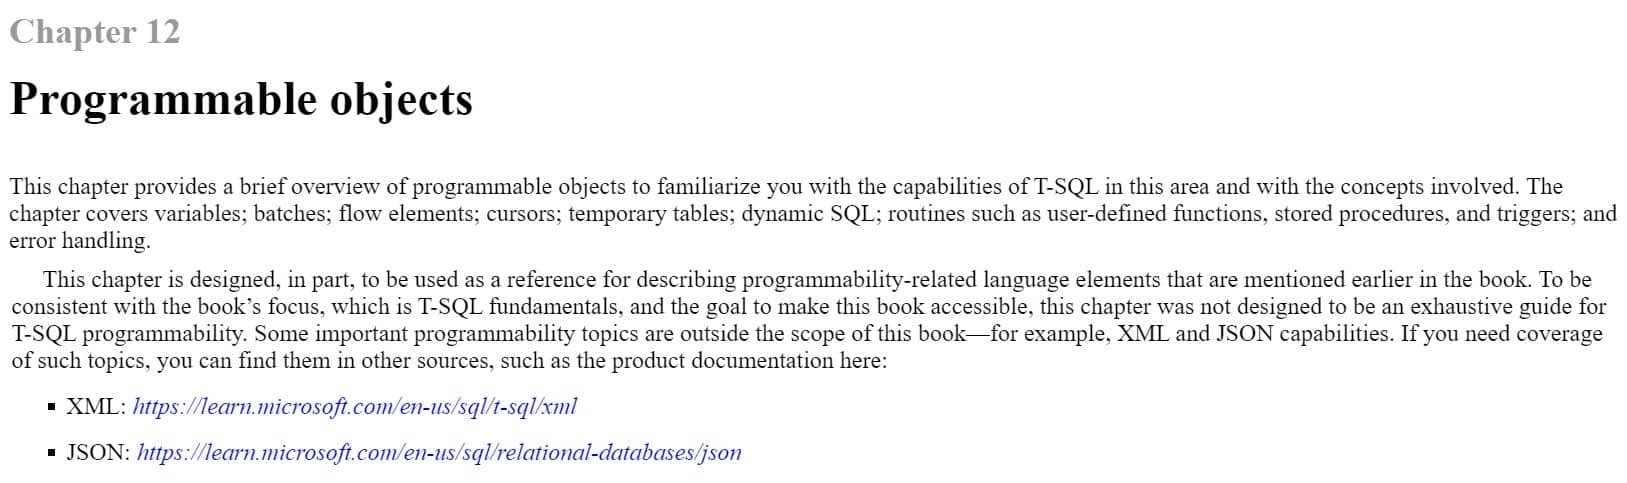 فصل 12 کتاب T-SQL Fundamentals ویرایش چهارم